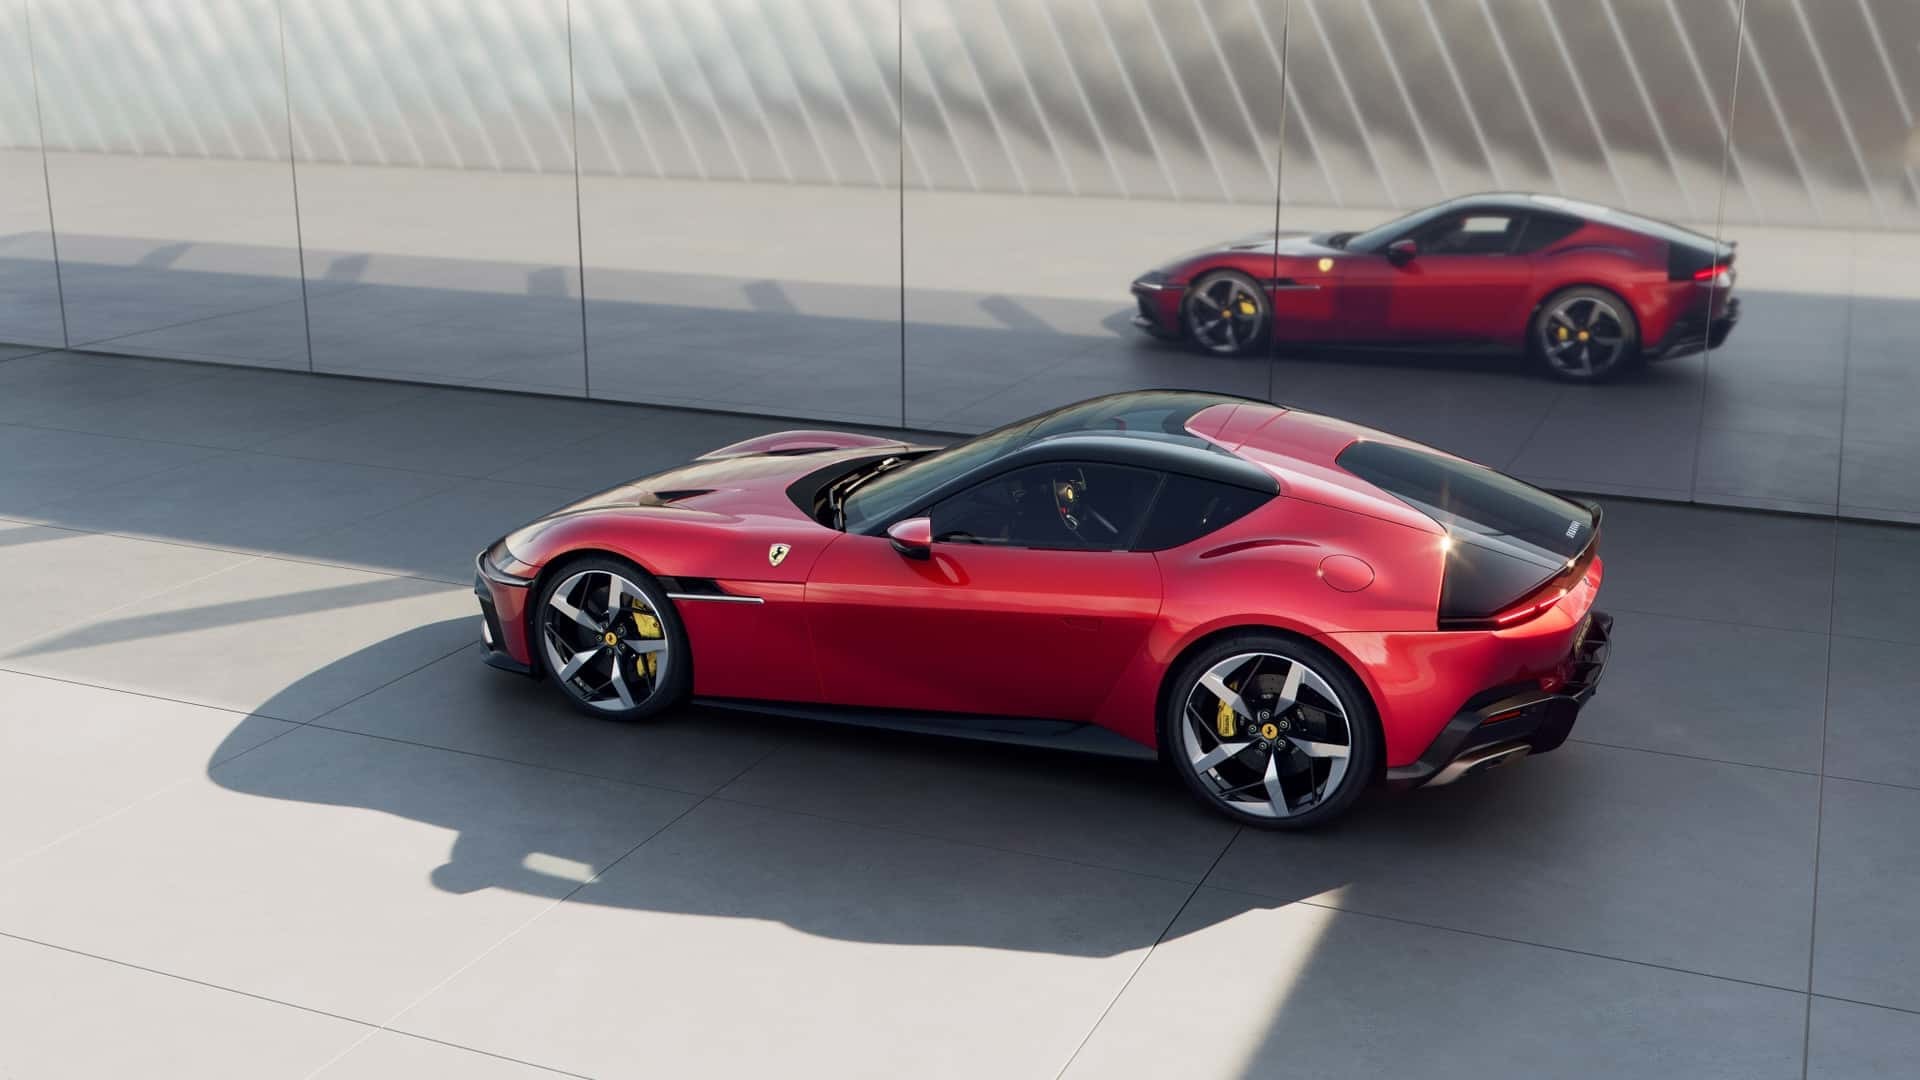 Ferrari представила новые 12Cilndri и 12Cilndri Spider